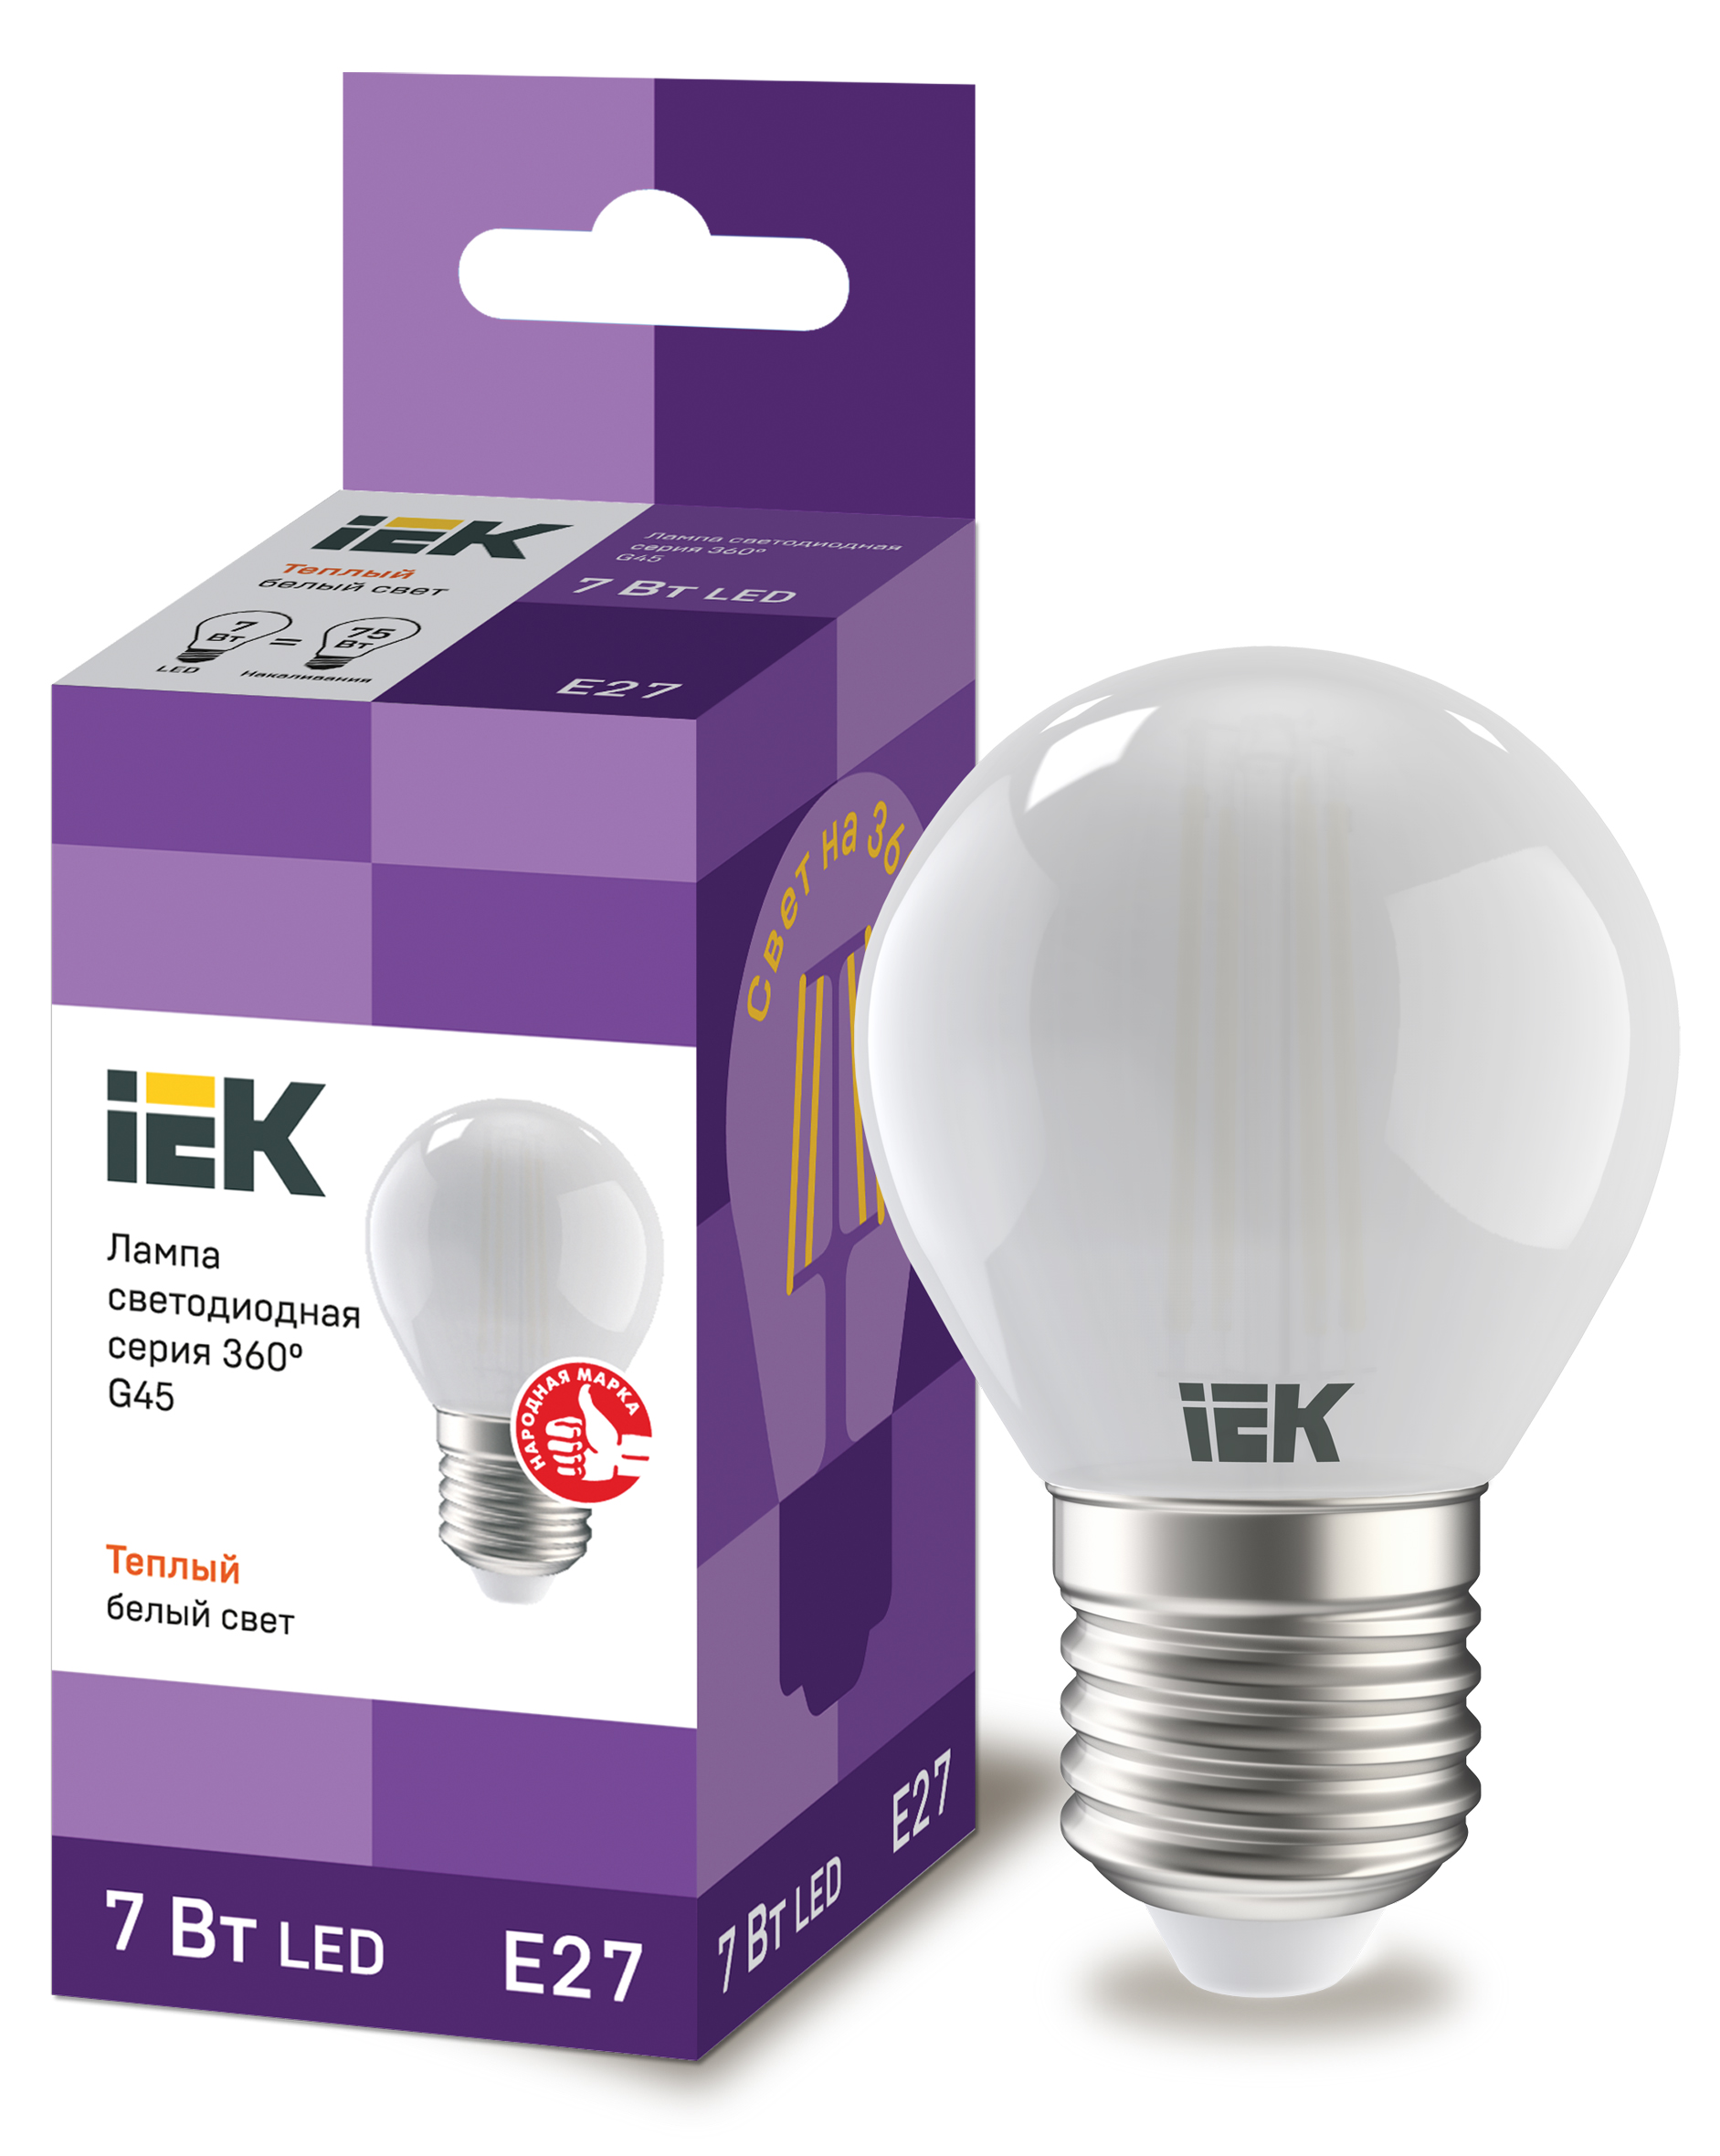 IEK Лампа LED G45 шар матовый 7Вт 230В 4000К E27 серия 360°